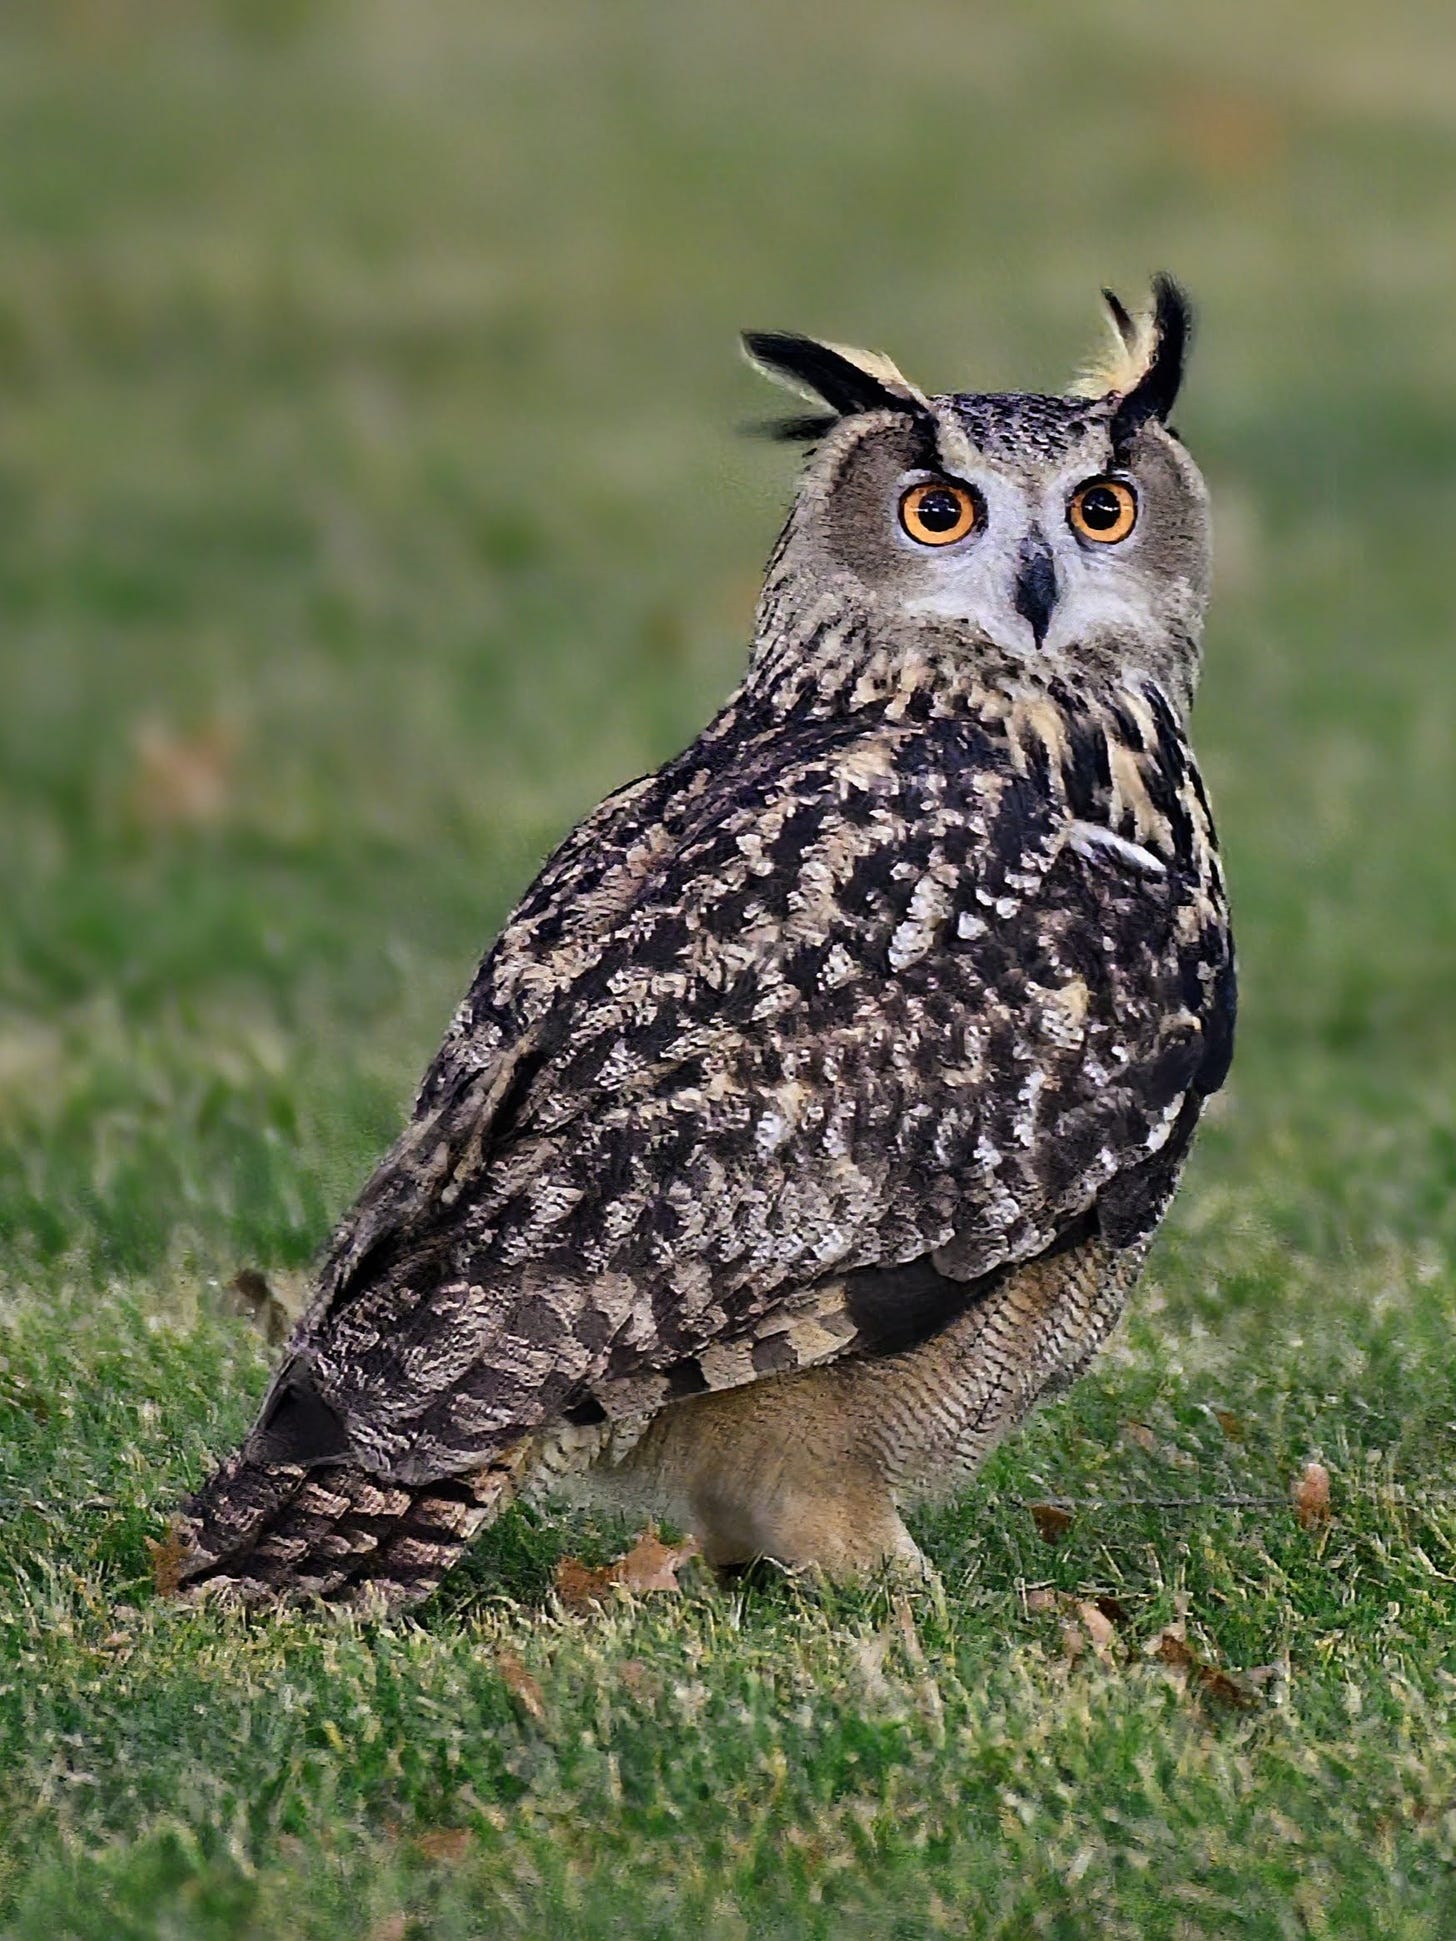 Flaco the Owl, a famous Eurasian eagle-owl, in New York City.